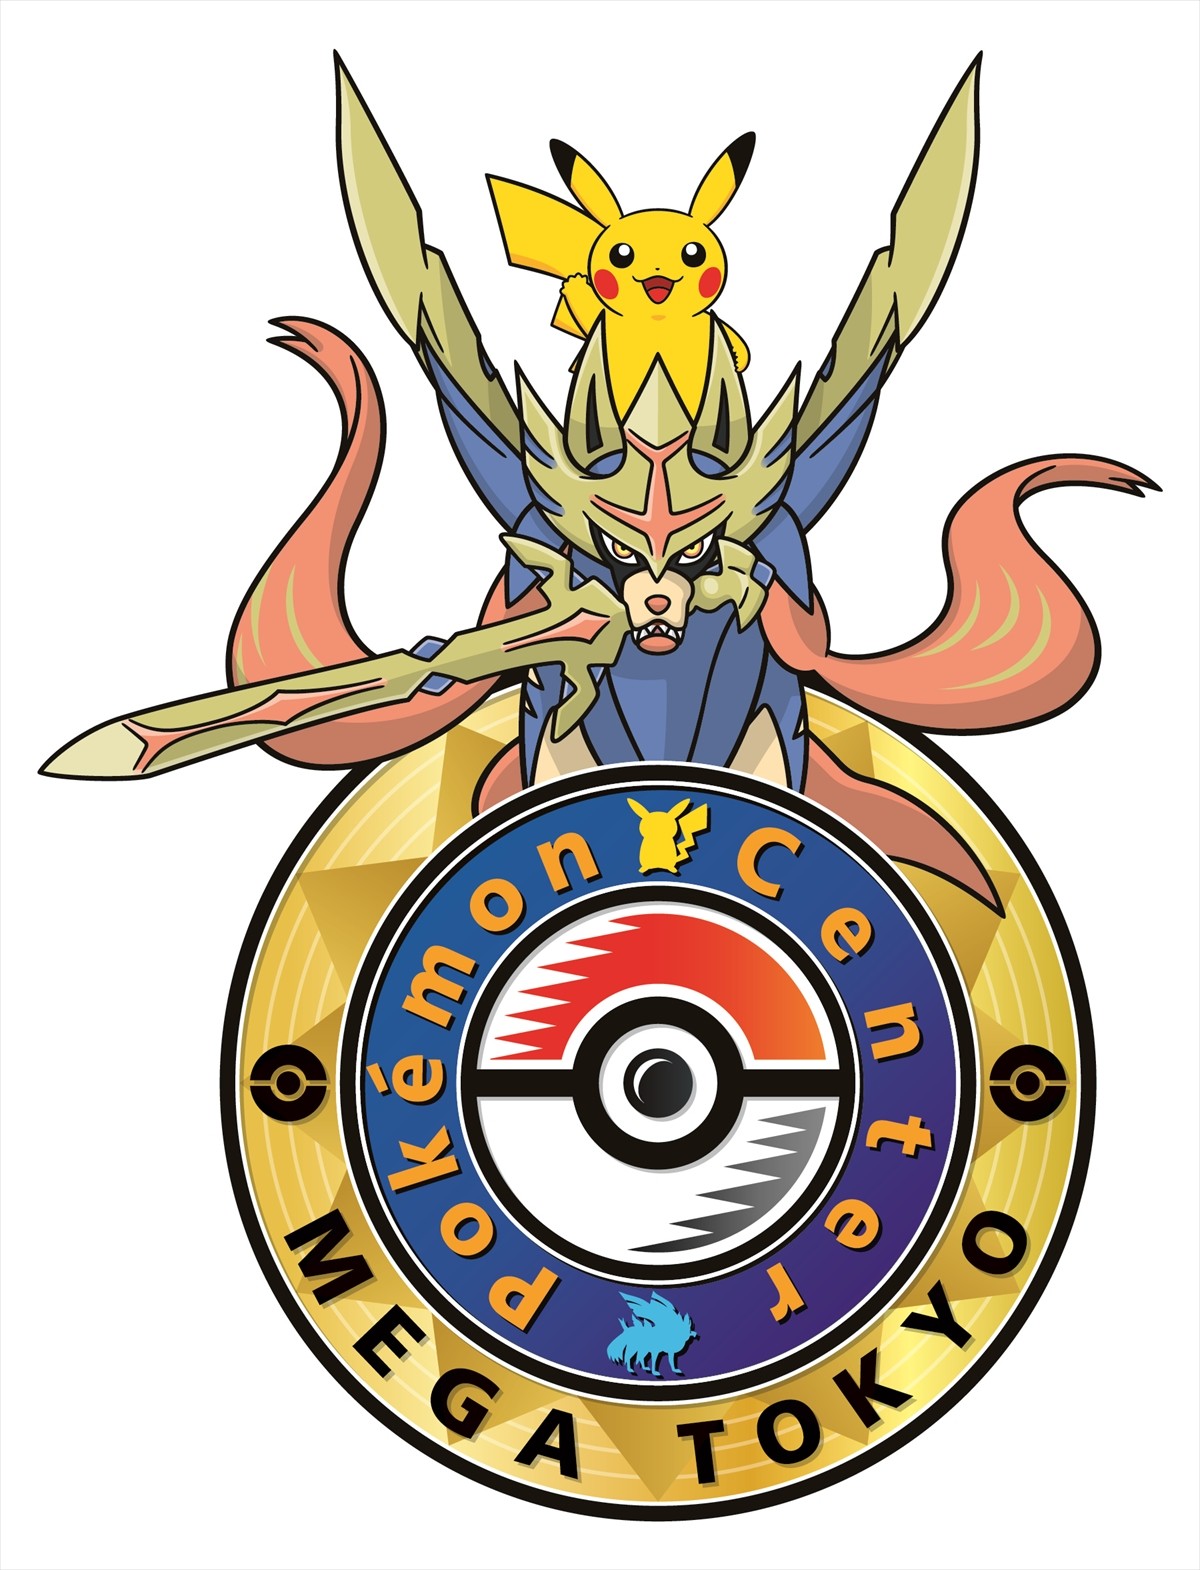 What is Pokémon Center Mega Tokyo?